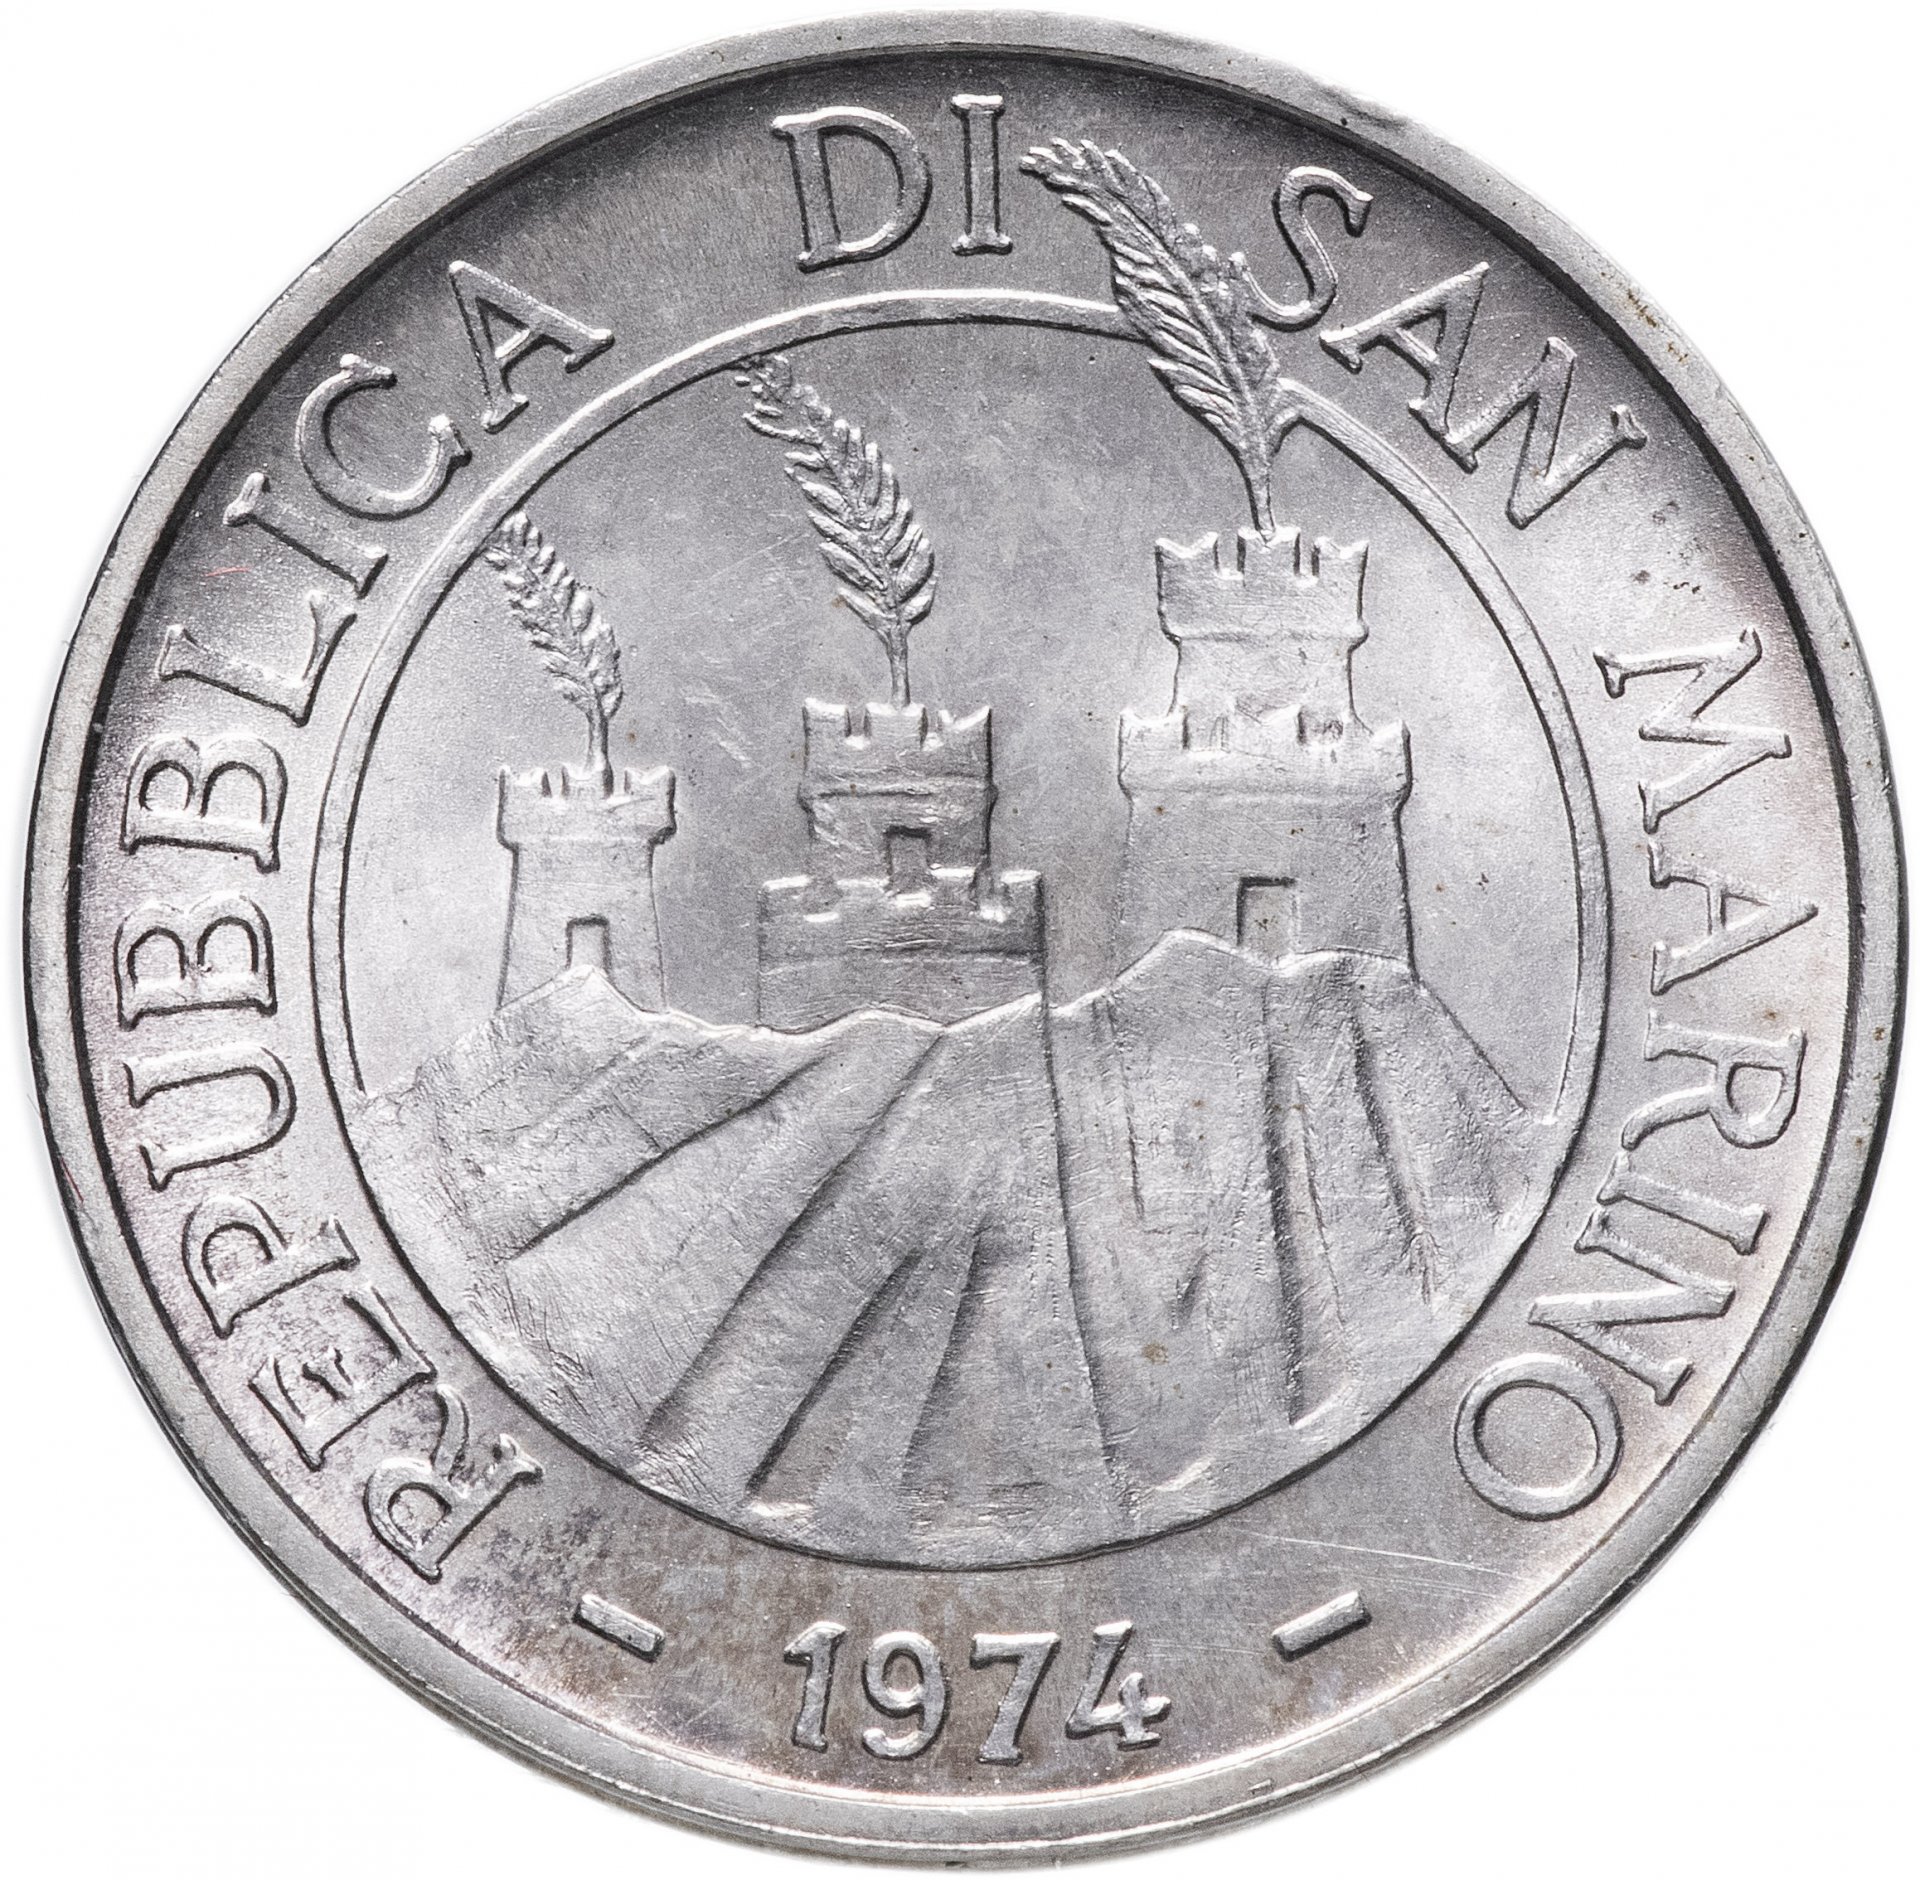 Сан марино каталог. Сан-Марино 5 лир, 1974. Сан-Марино, 100 лир. Сан-Марино 500 лир, 1974. Монеты Сан Марино 1974.